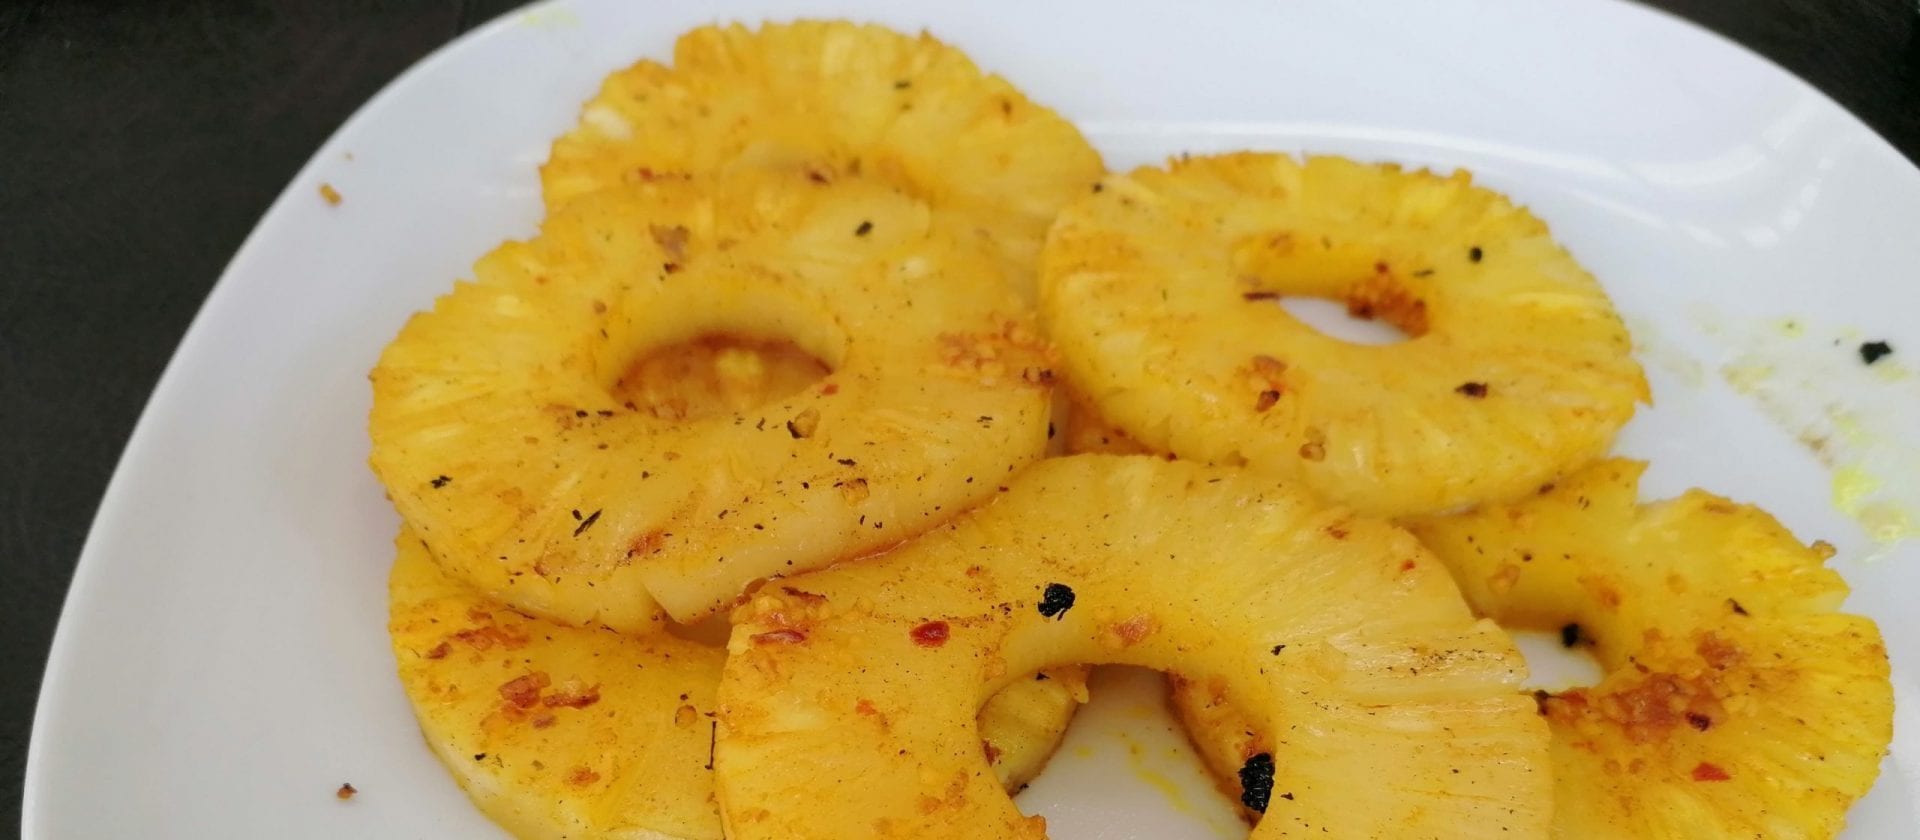 Gegrillte Ananasscheiben, Rezept mit Anleitung und Tips